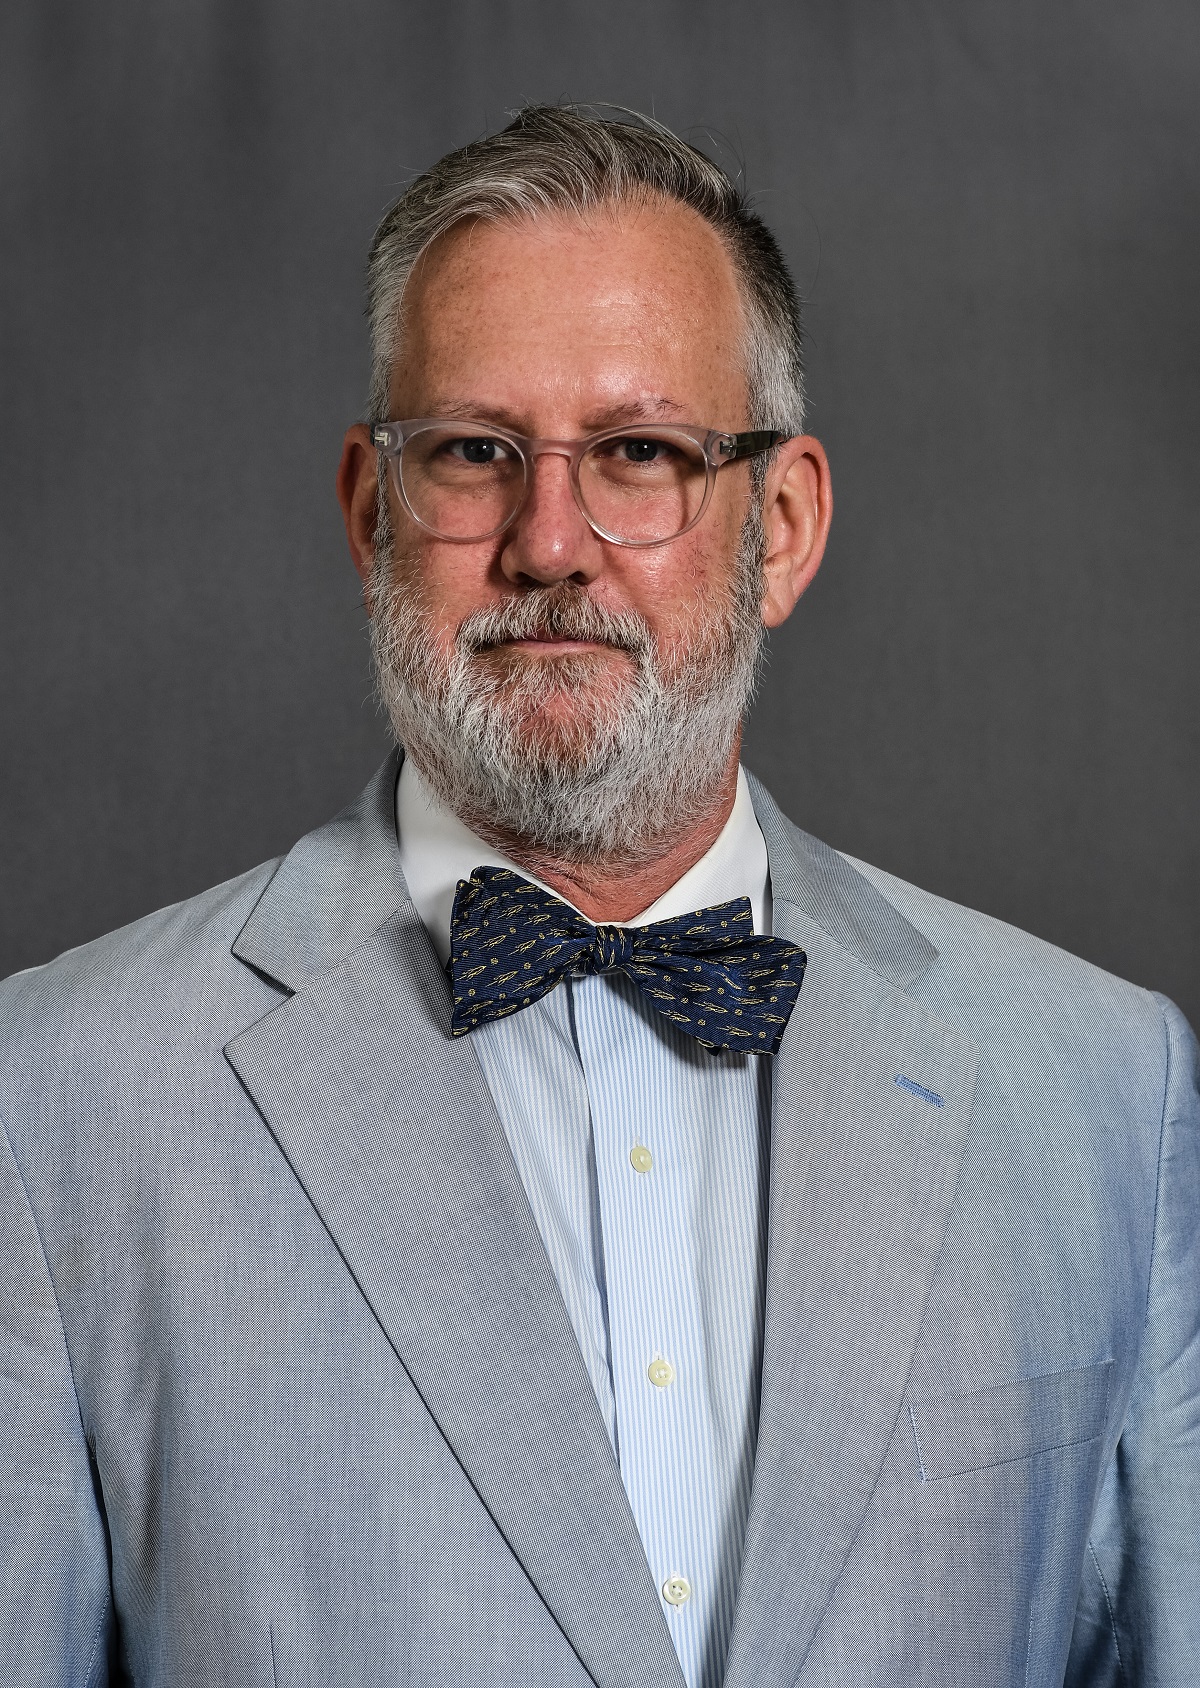 Dr. Brandon S. Cohen